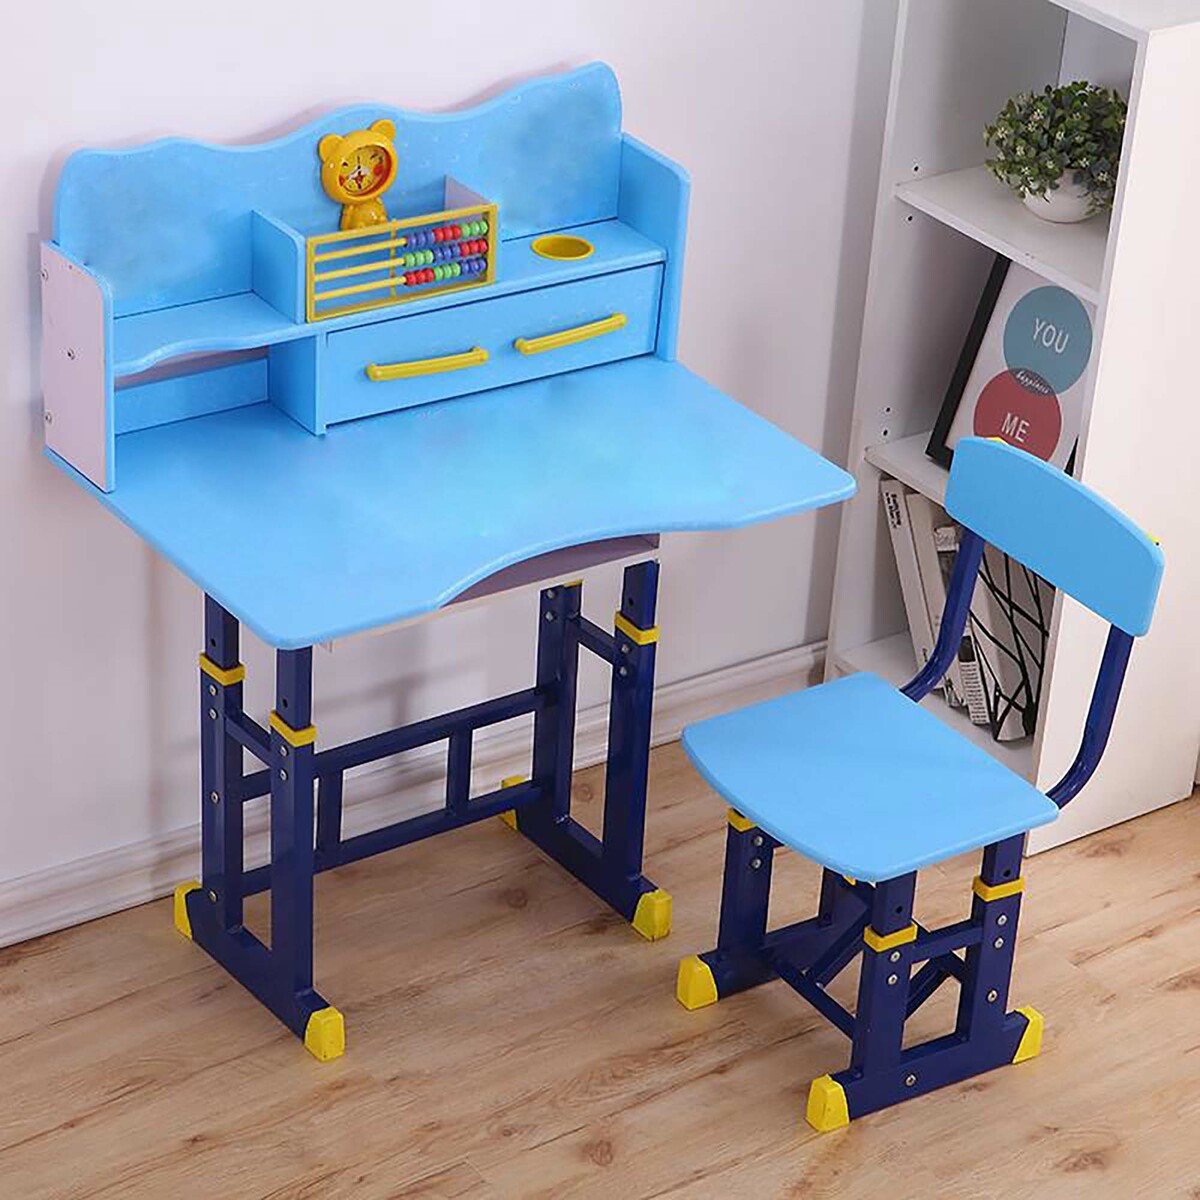 مابل ليف طاولة دراسة للأطفال + كرسي D-002 لون أزرق